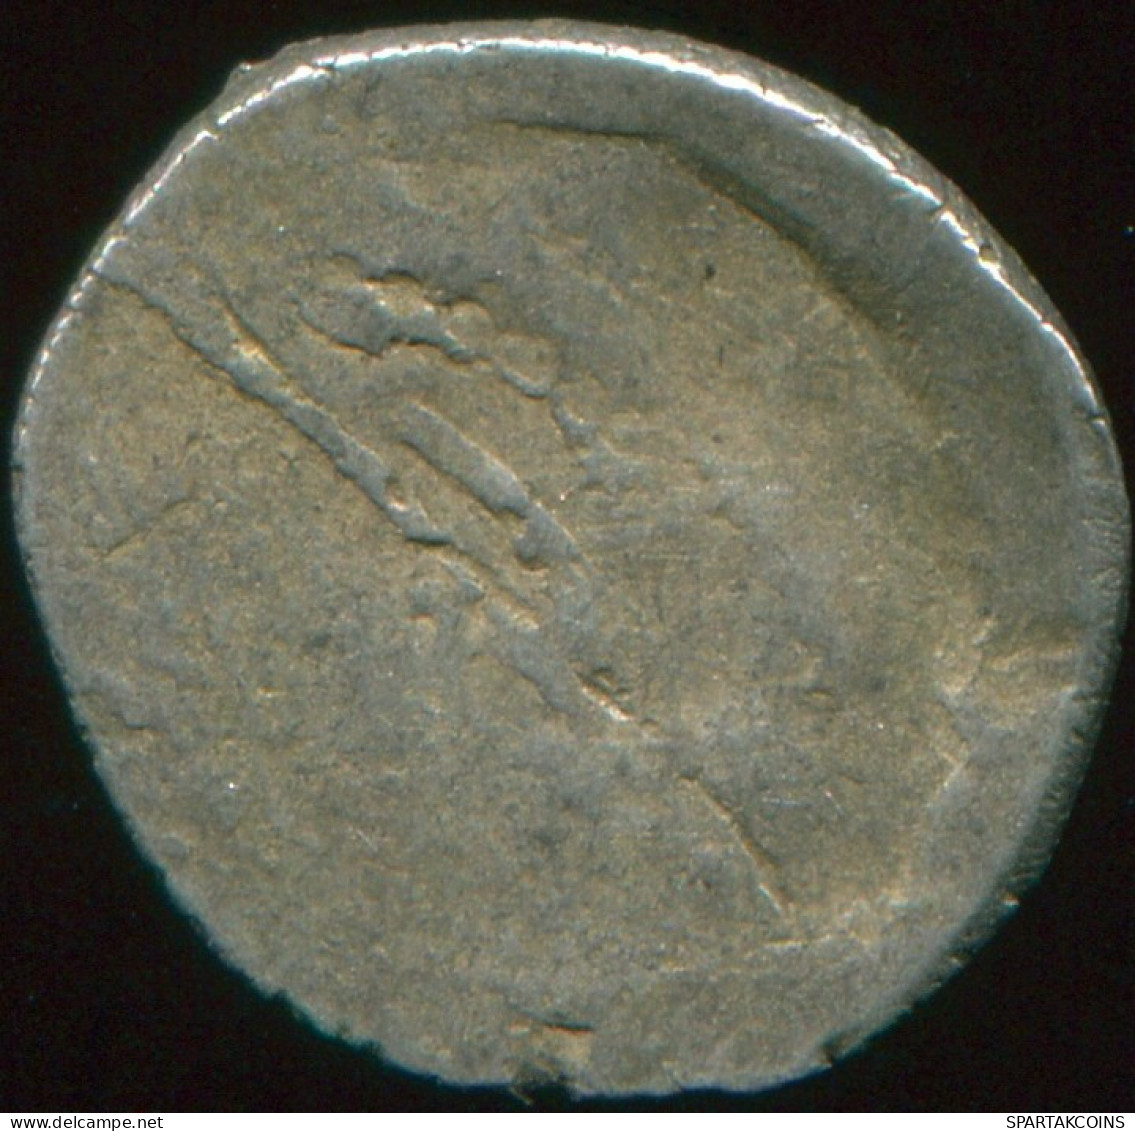 OTTOMAN EMPIRE Silver Akce Akche 0.7g/11.36mm Islamic Coin #MED10152.3.E.A - Islamiche